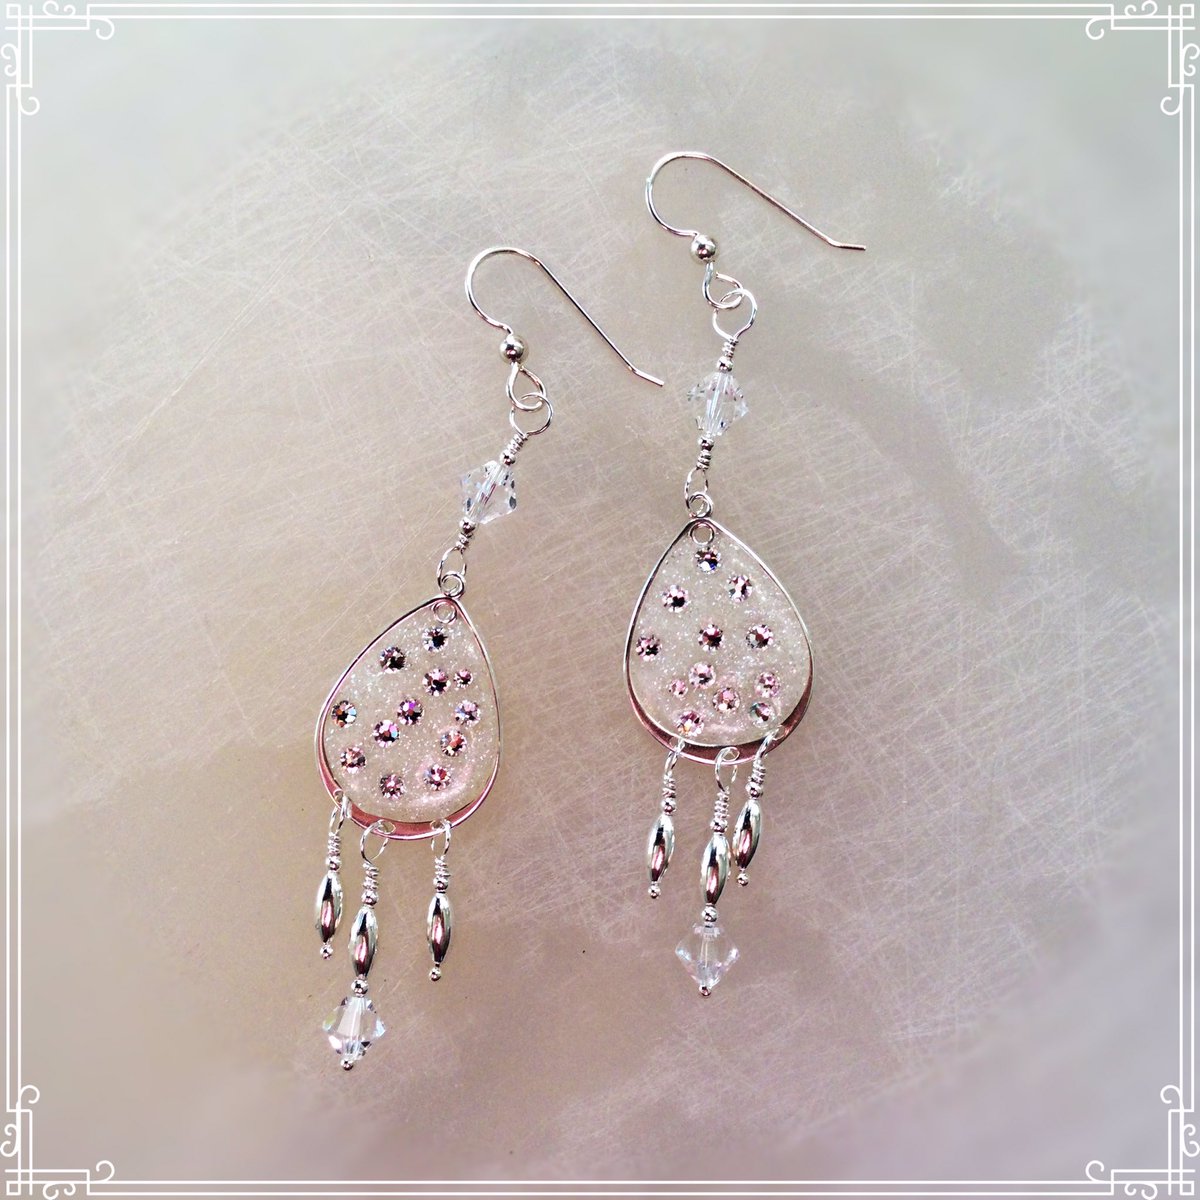 Tear drop earrings #holidayjewelry #earrings #gifts #jewelry